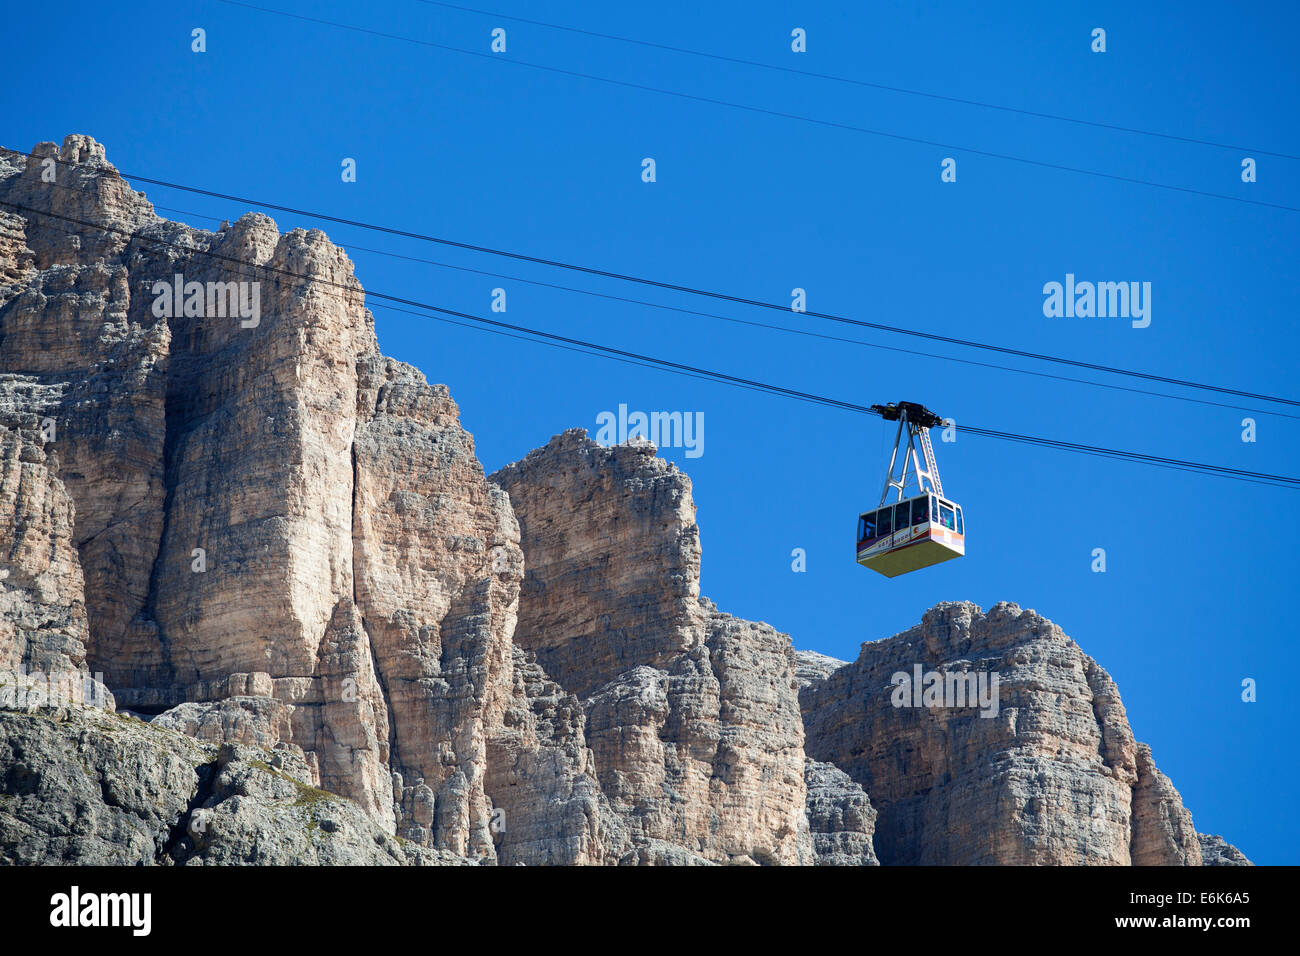 Cable car on Sass Pordoi Mountain, summit of Pordoi Pass, Sella Group, Dolomites, Trentino province, Italy Stock Photo